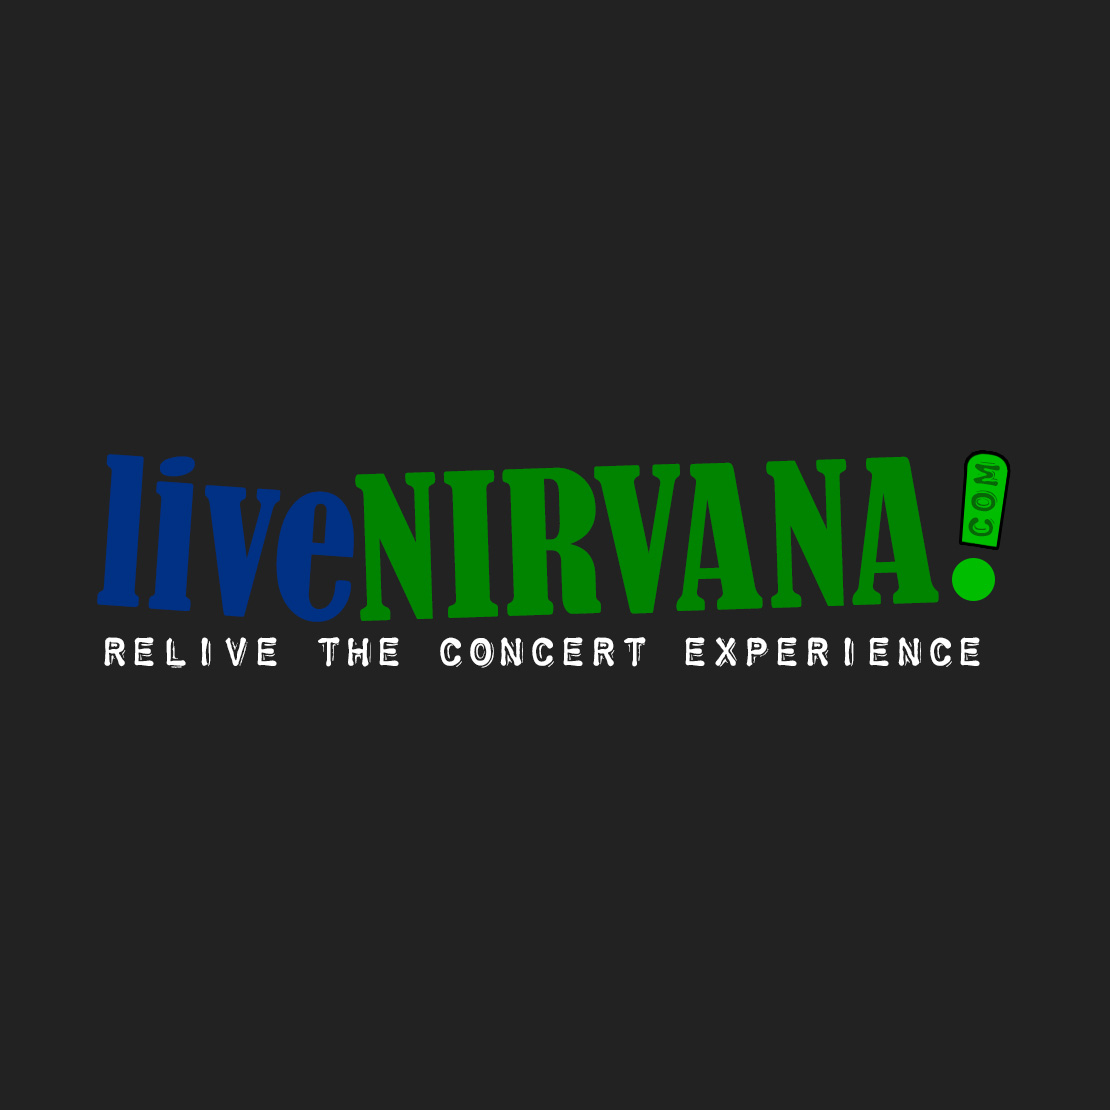 (c) Livenirvana.com